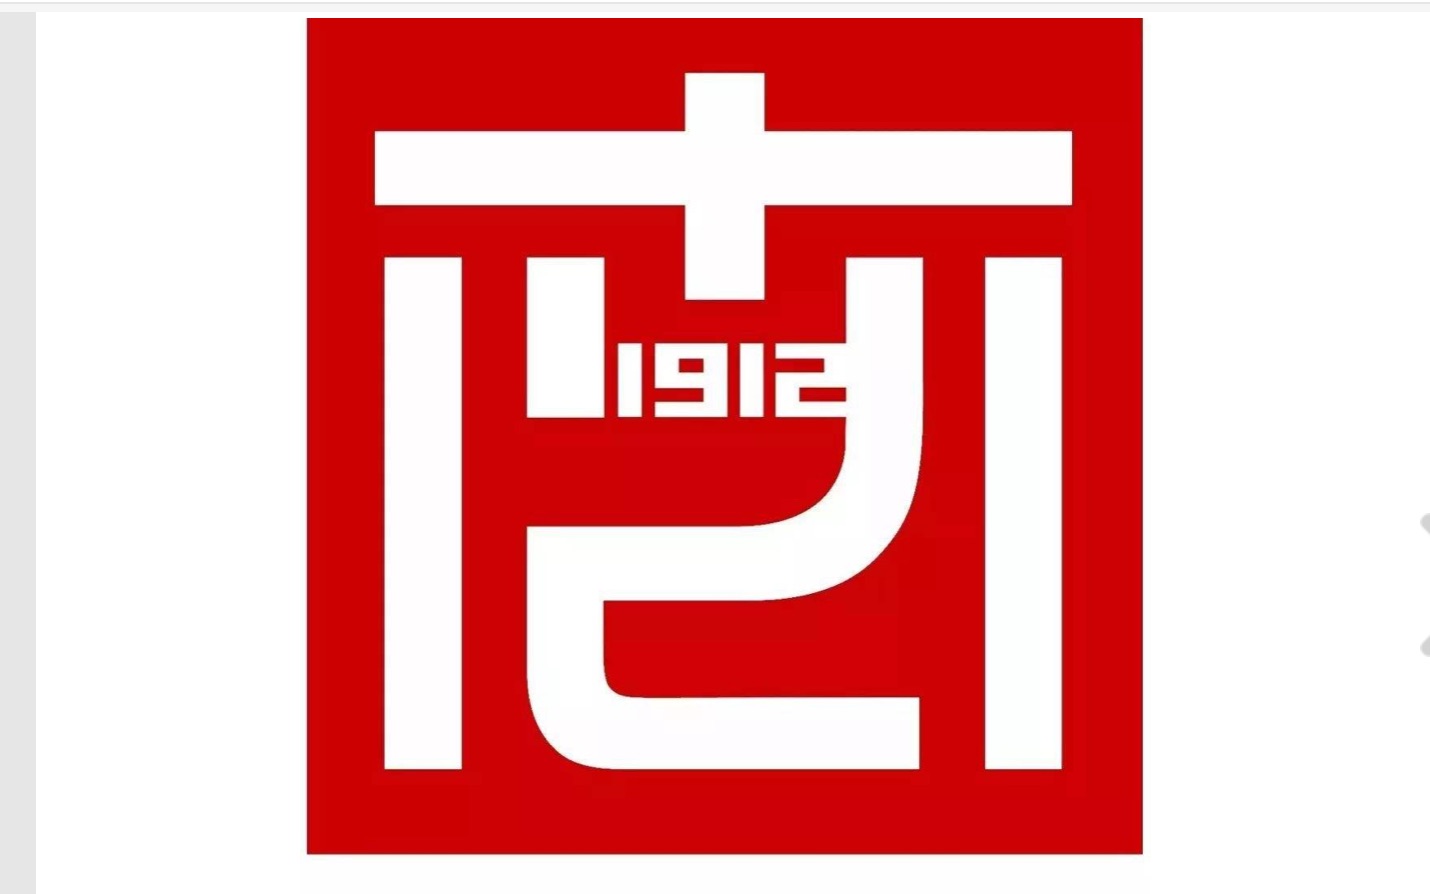 南京艺术学院logo含义图片